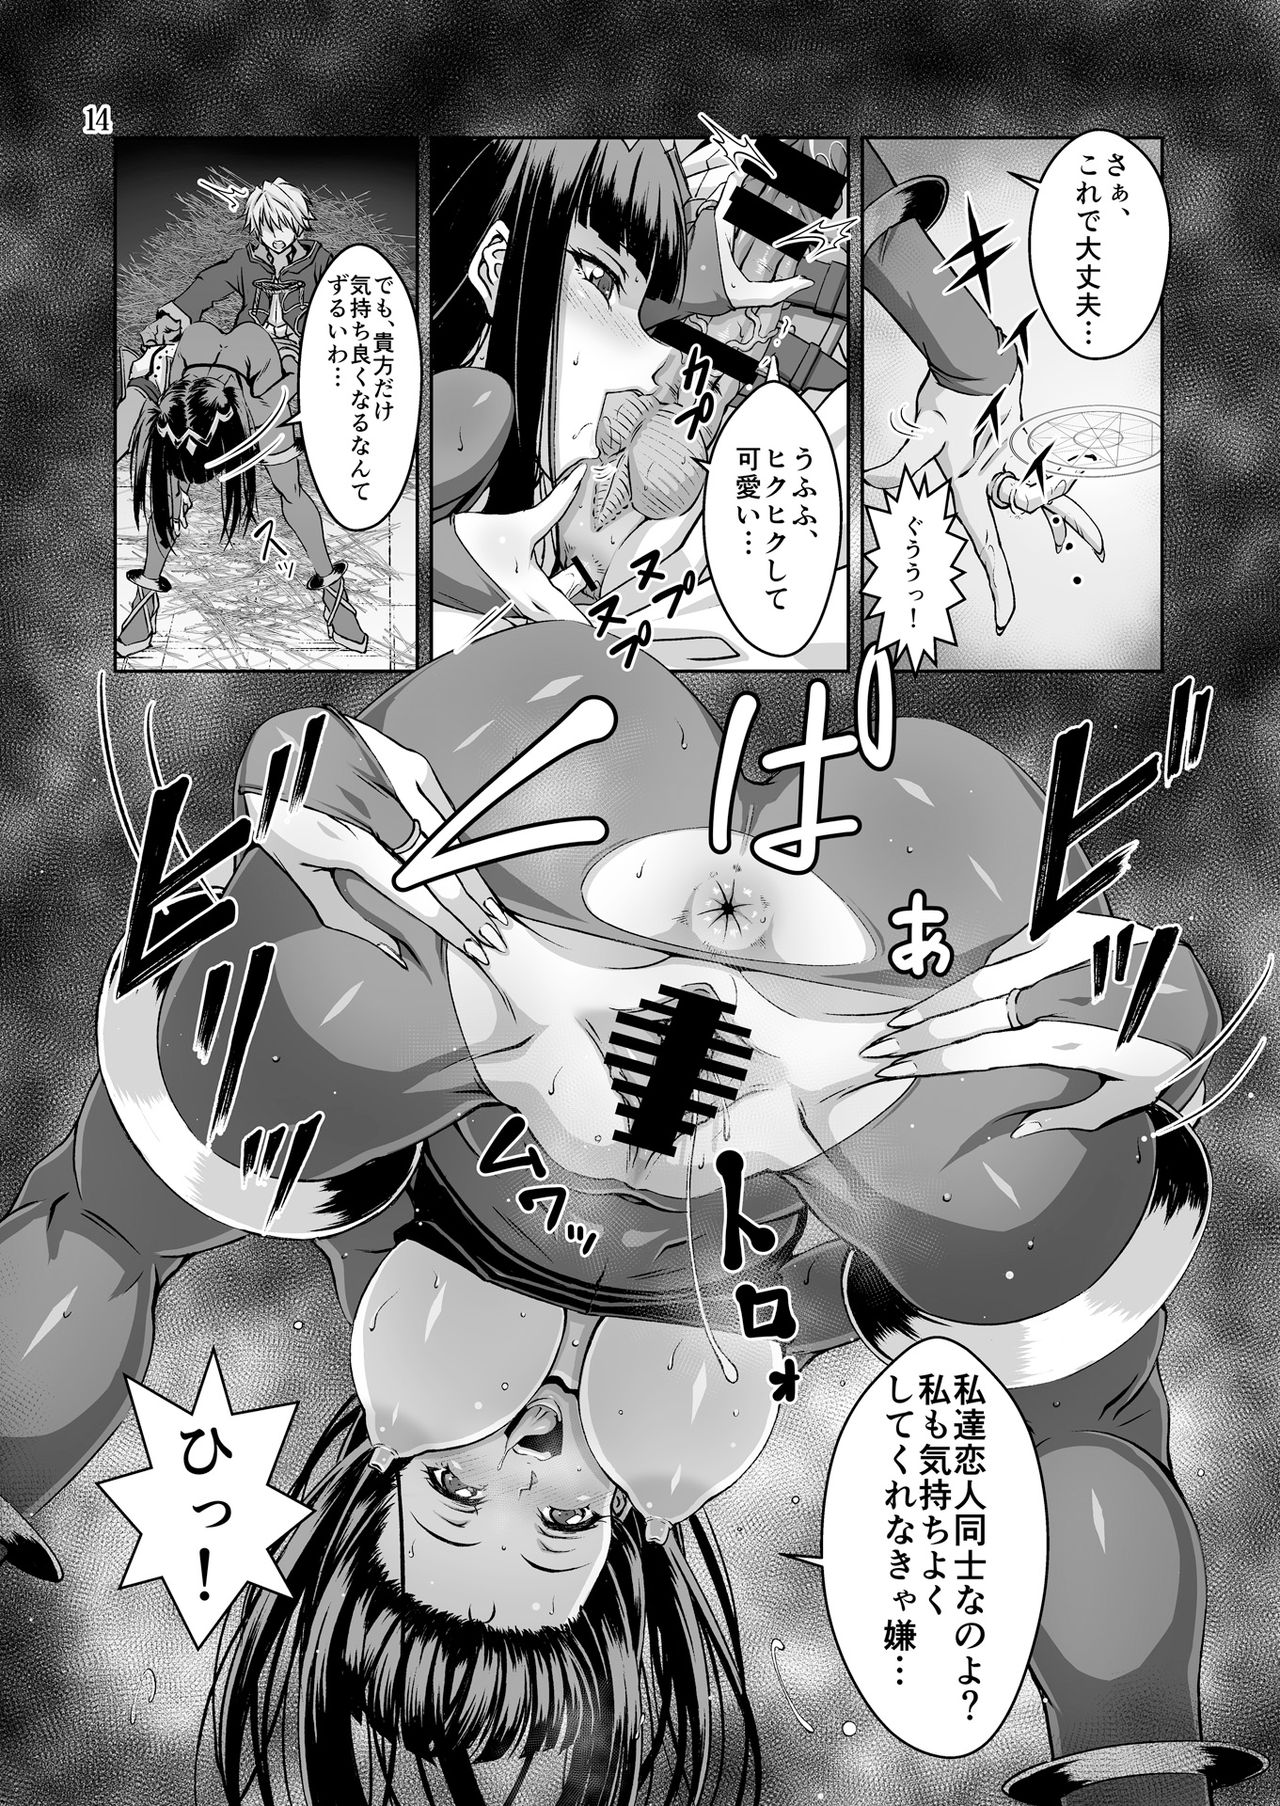 [BOBCATERS (Hamon Ai, Syunzo, Yajiro Masaru)] Oshi Chara Emblem (Fire Emblem) [Digital] page 13 full